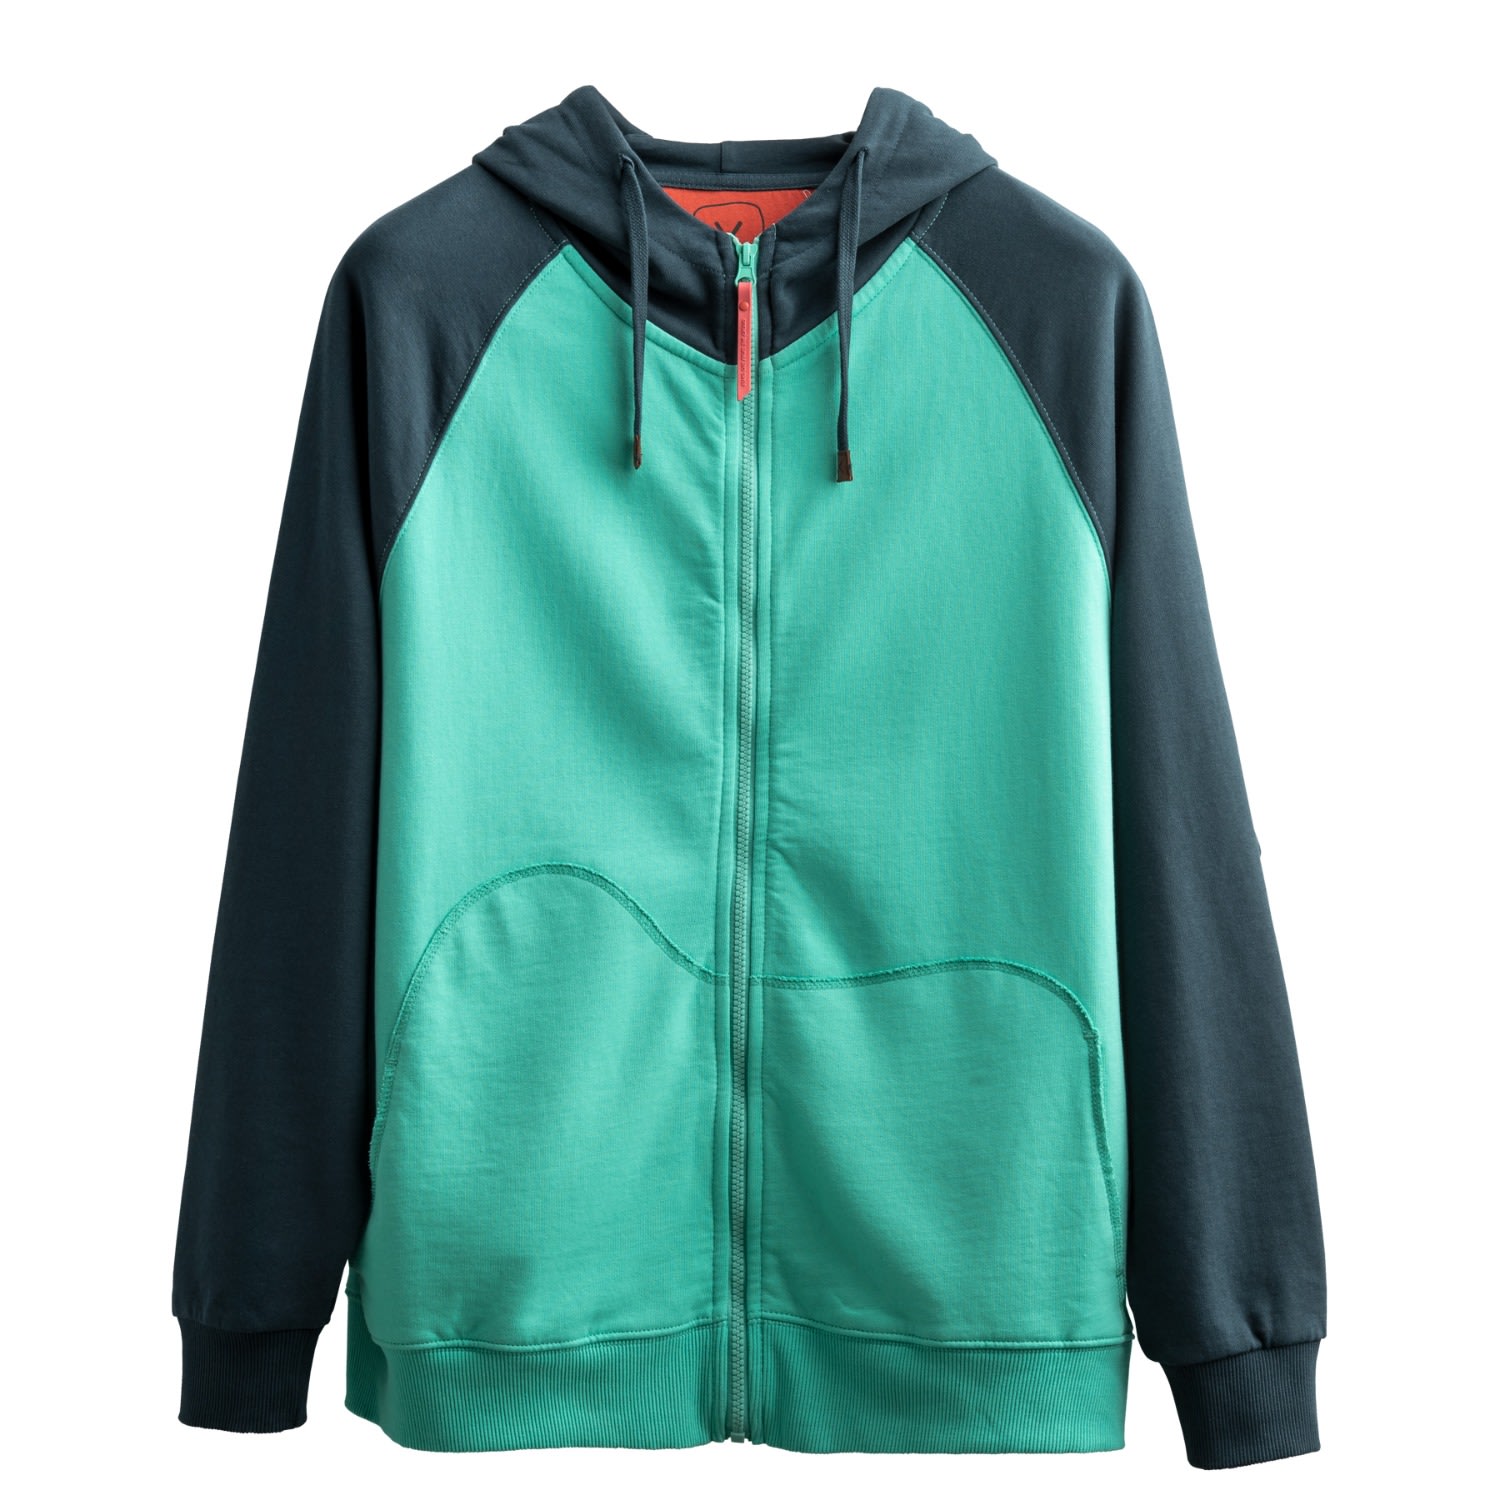 Men's Green Unisex Design Zipper Hoodie Sweatshirt - Kleuzip - Turquois Extra Small KAFT